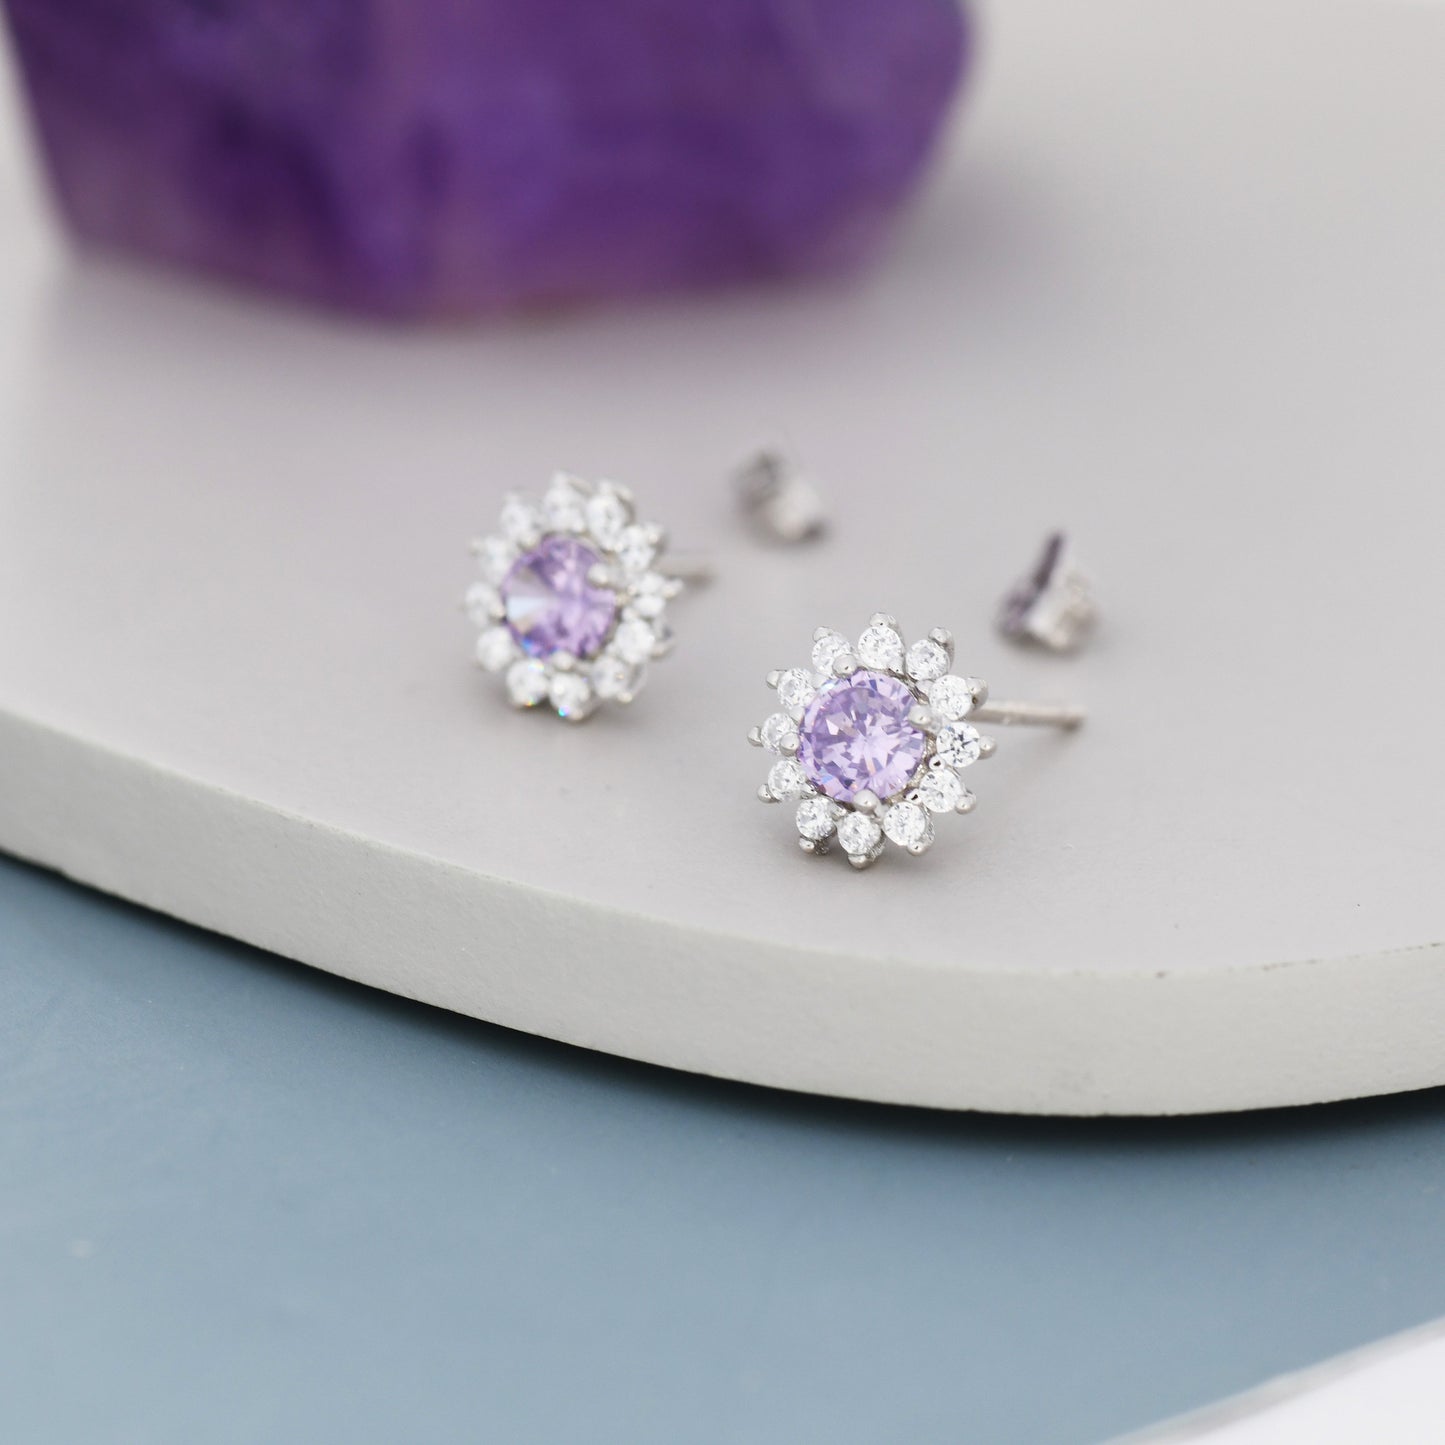 Amethyst Purple CZ Halo Stud Earrings in Sterling Silver, Silver or Gold, February Birthstone Earrings, Flower CZ Earrings